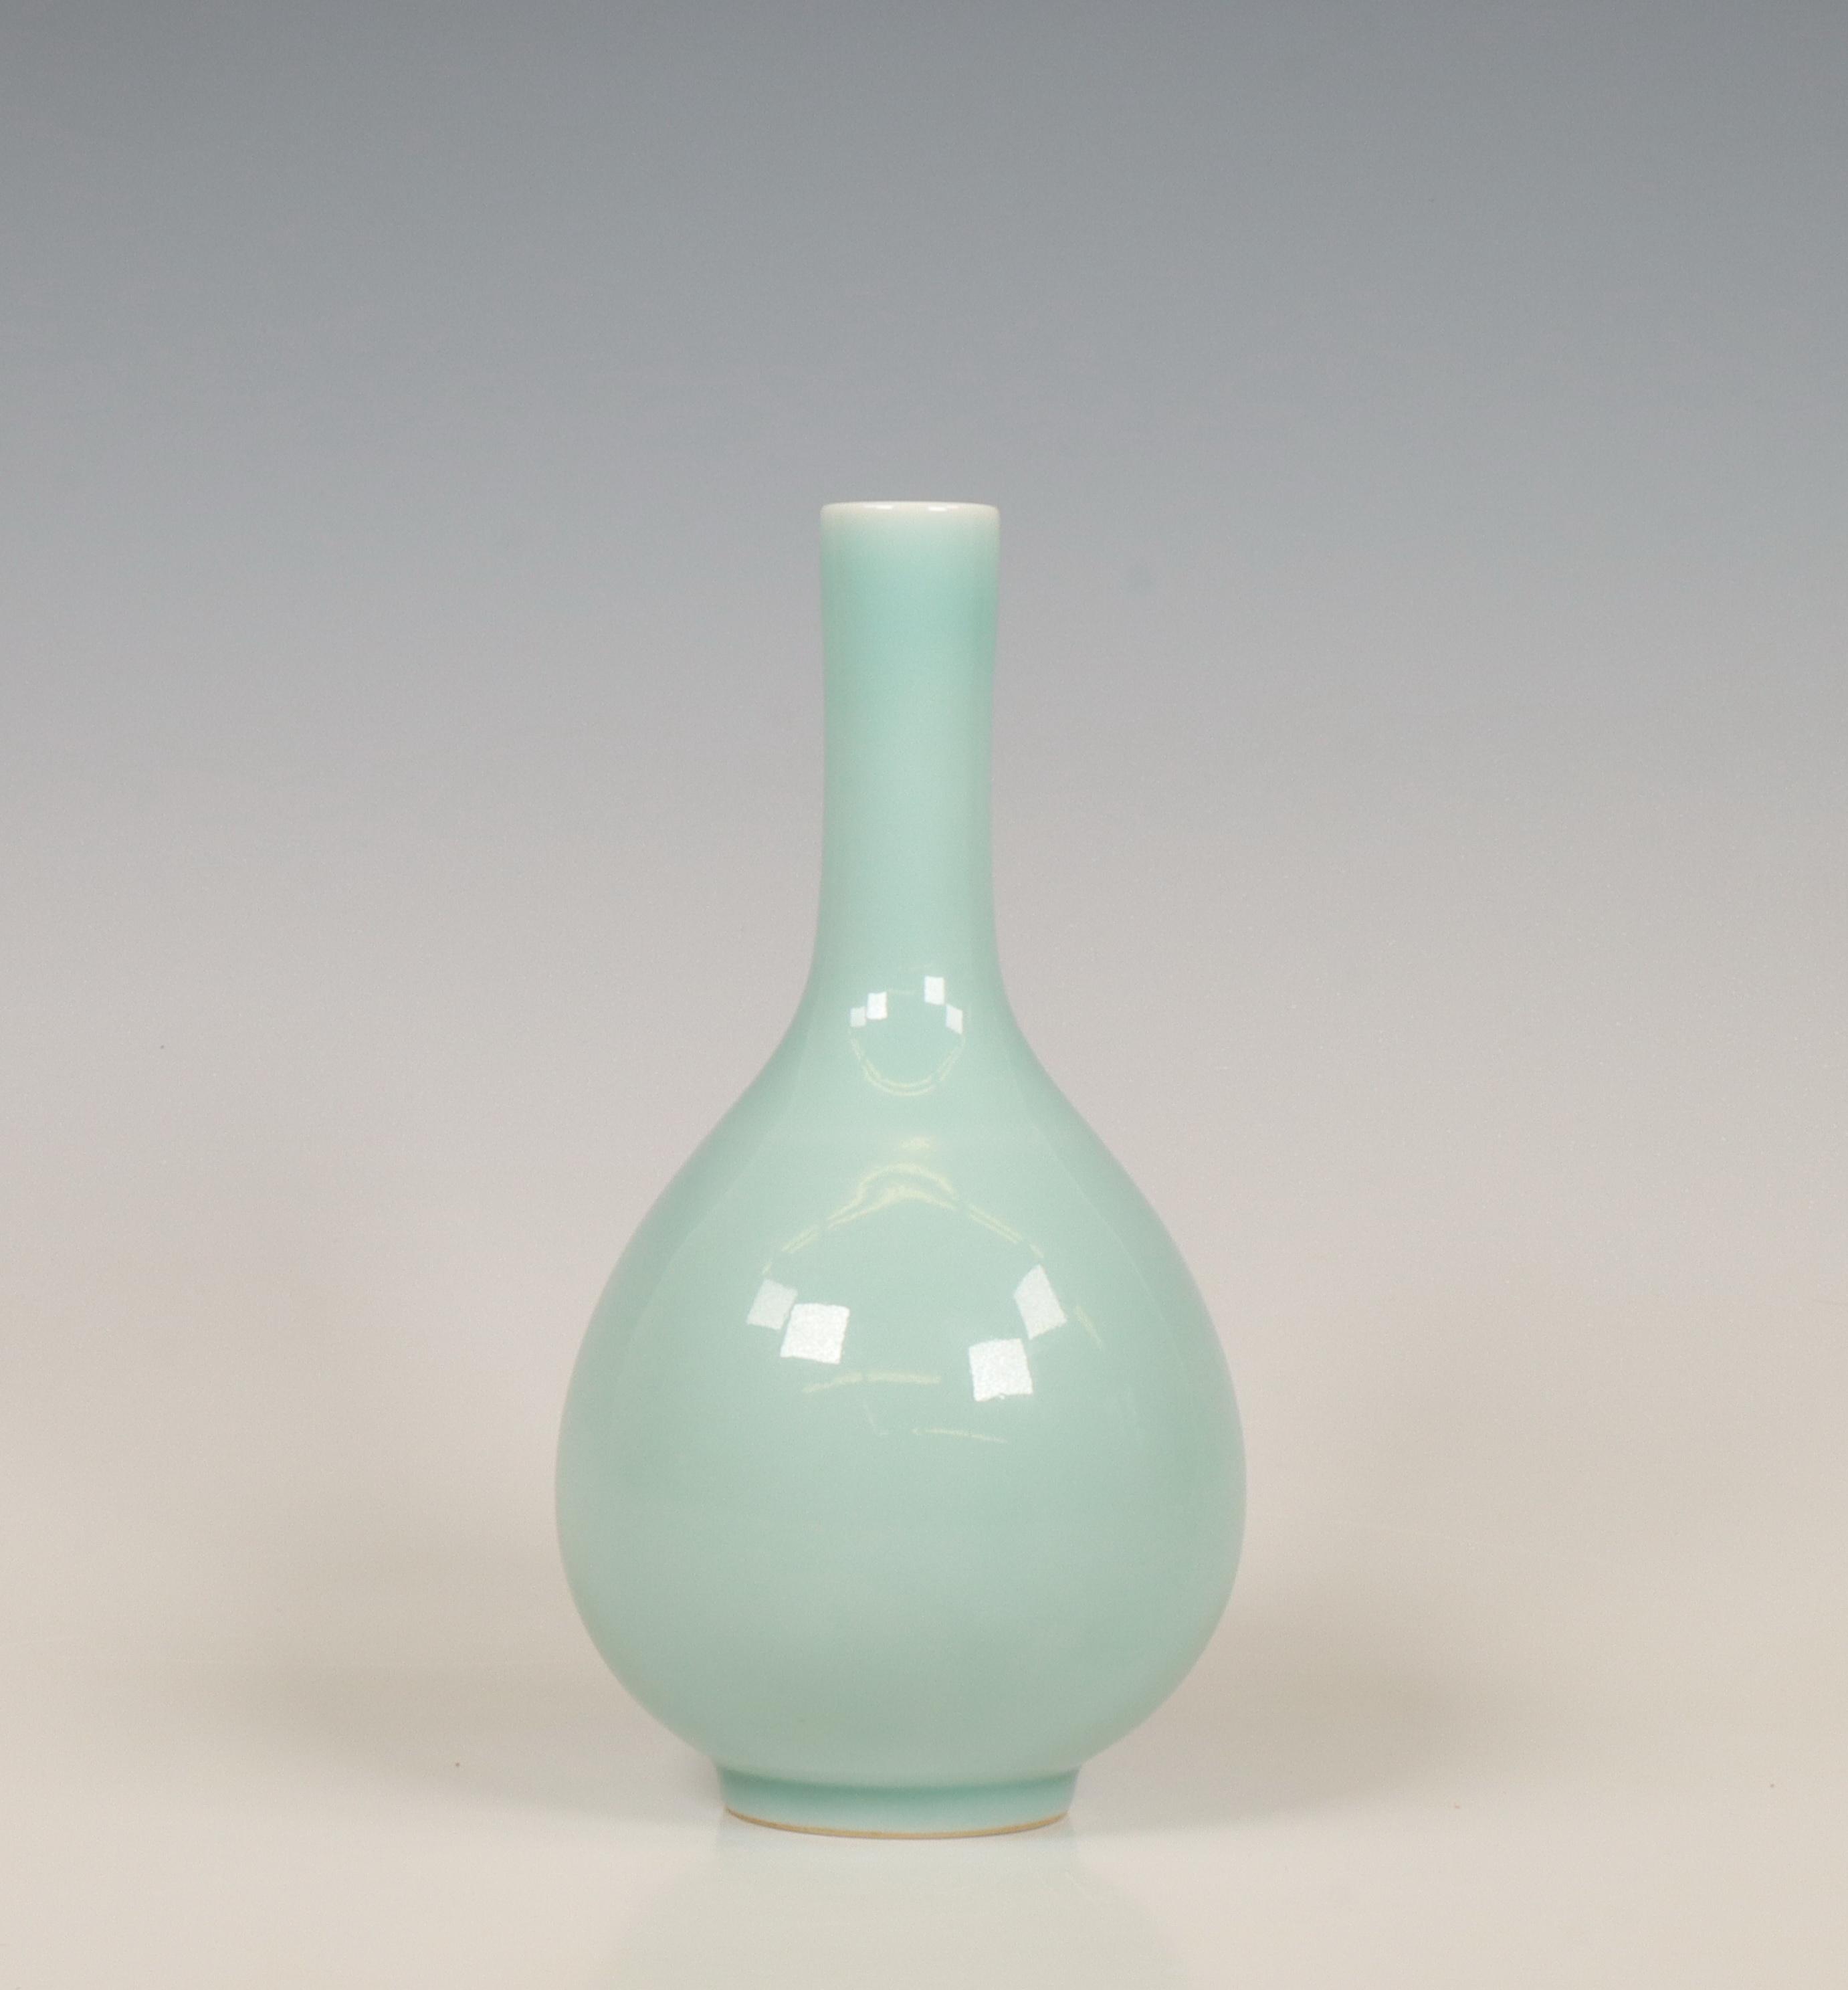 China, claire-de-lune-glazed bottle vase, 20th century,